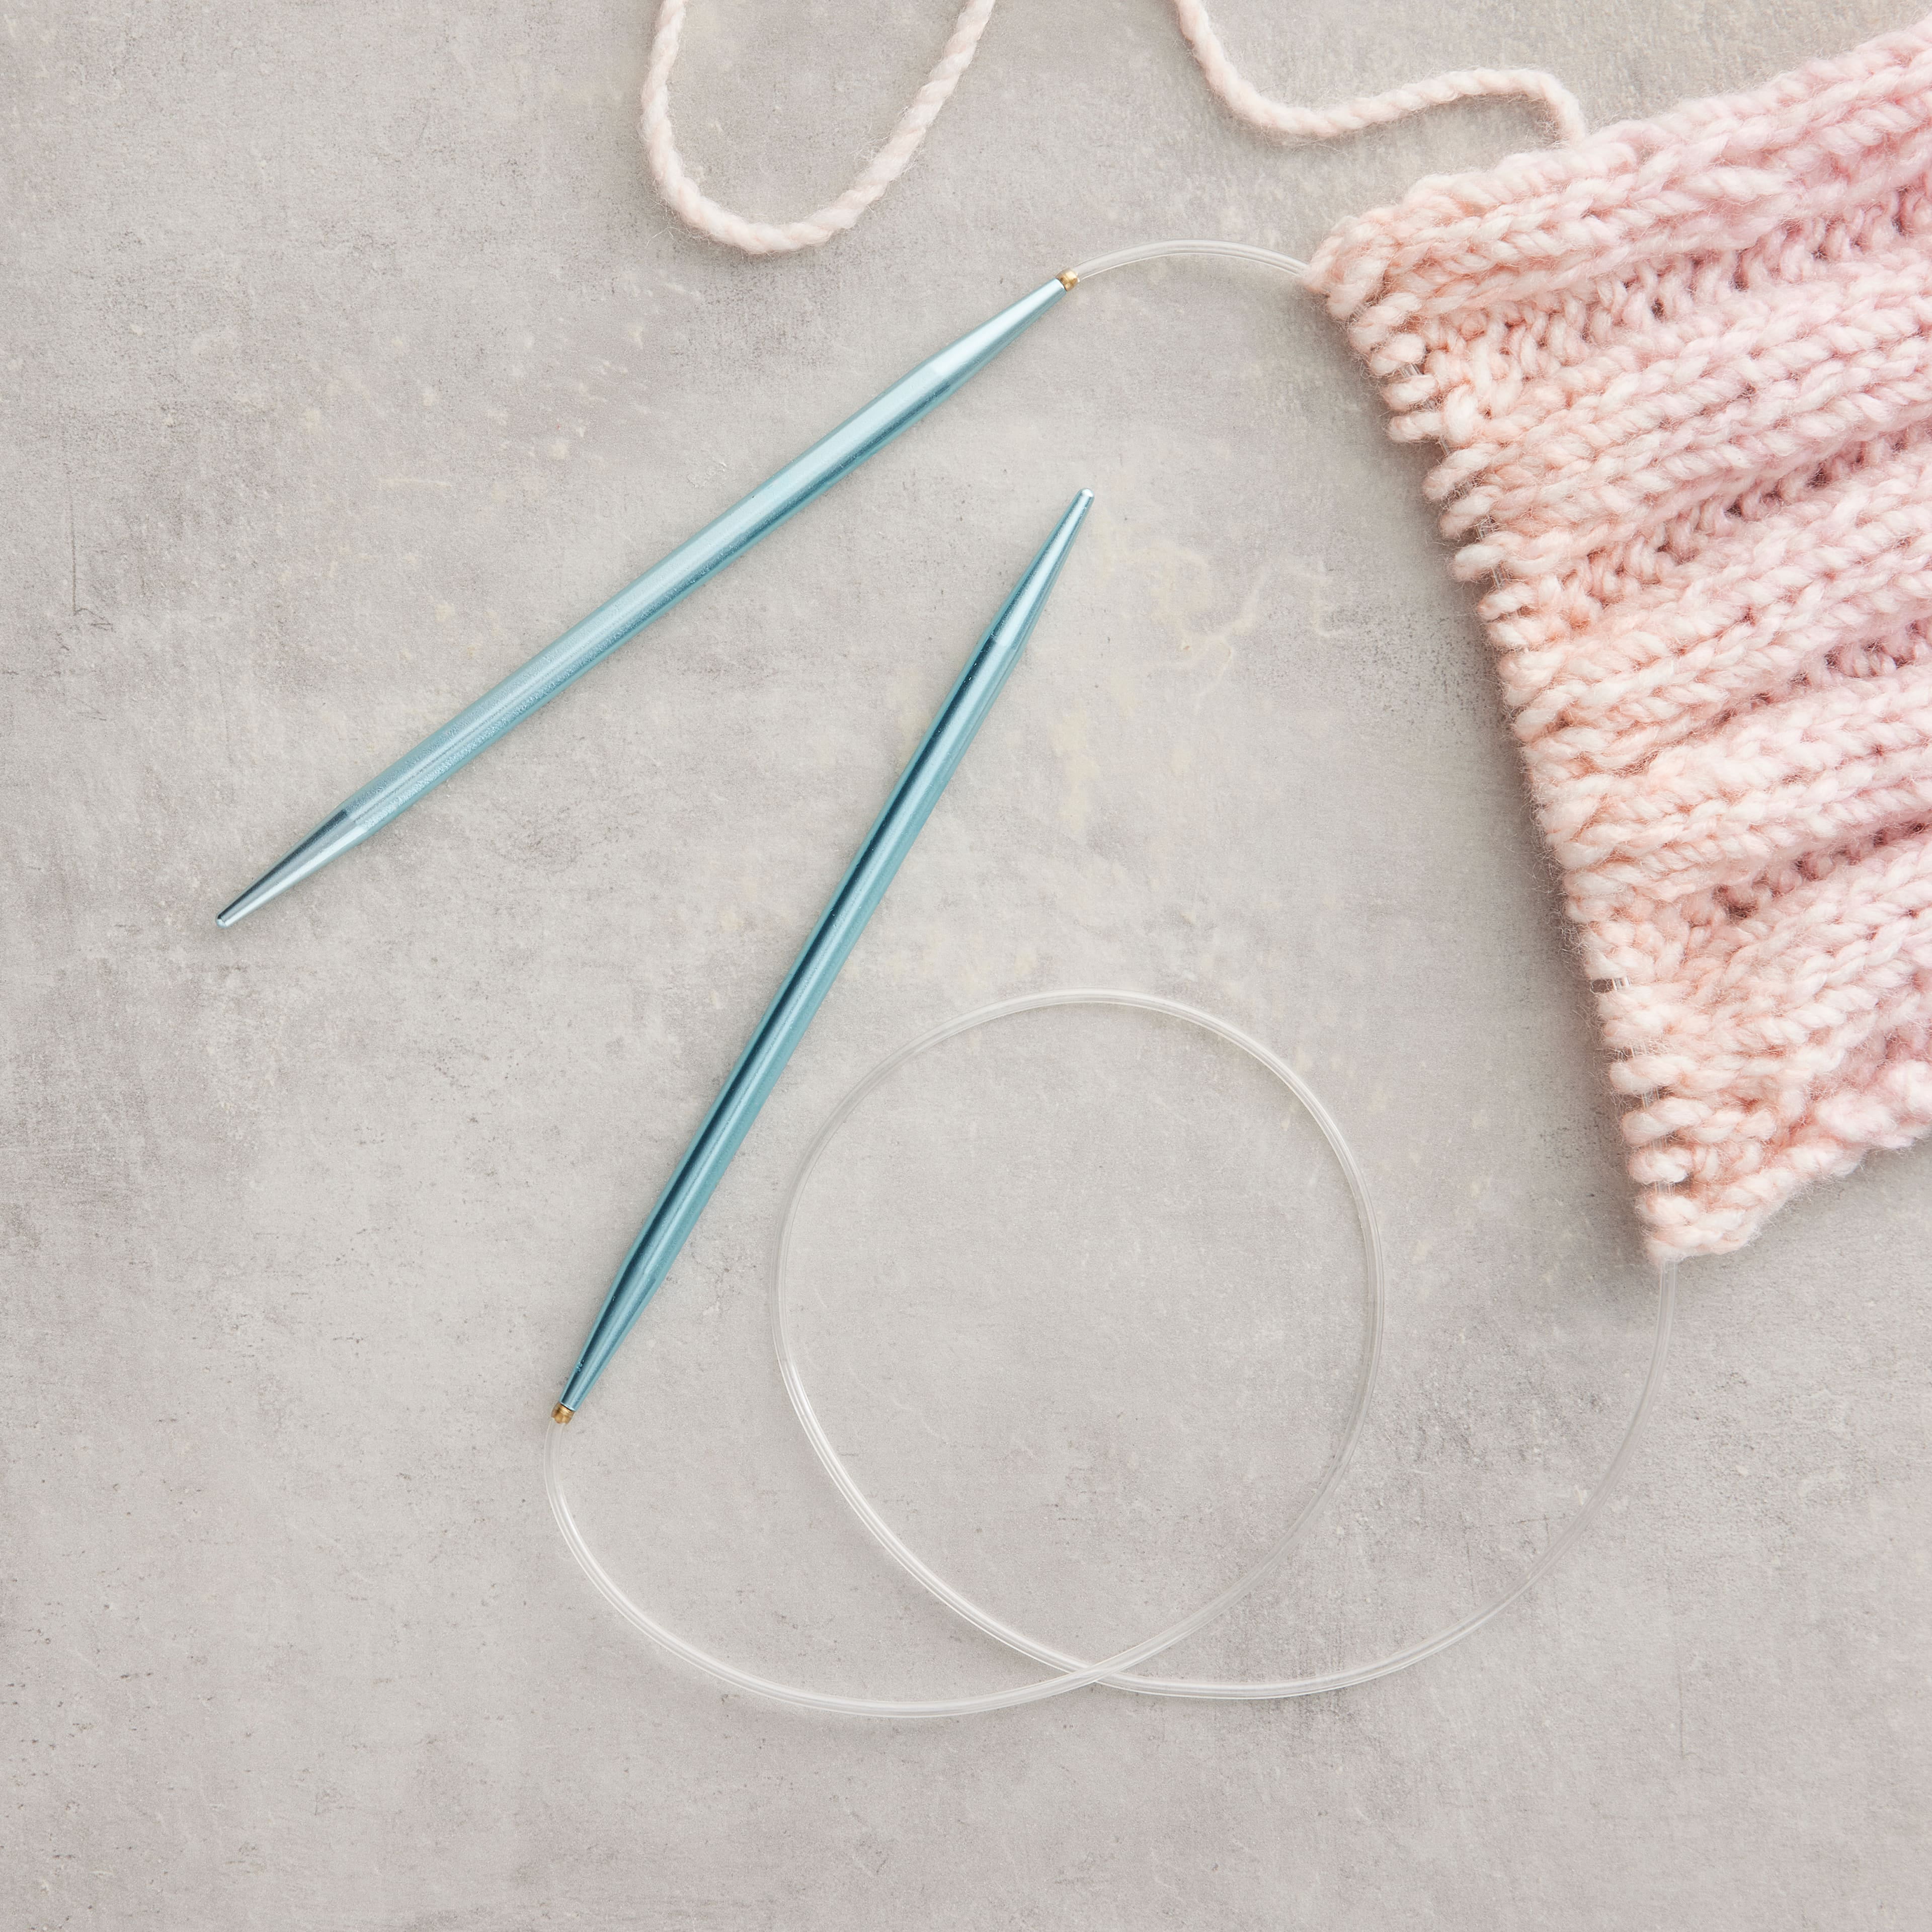 Takumi Bamboo Knitting Needles Circular 36 No. 17 (12.75mm)